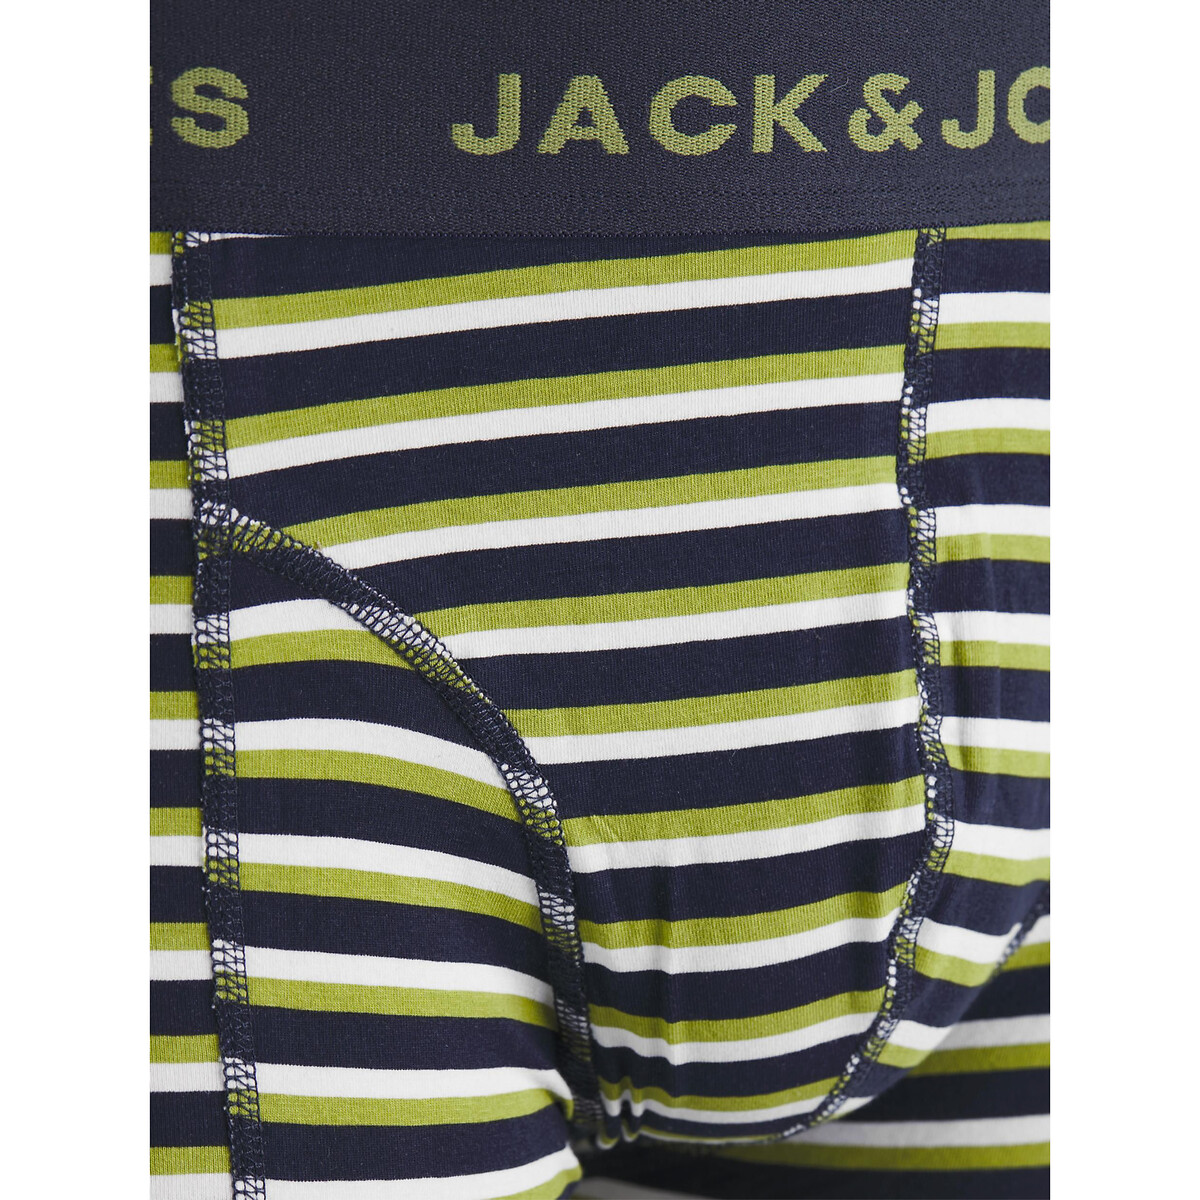 3er-Pack Boxerpants von jack & jones